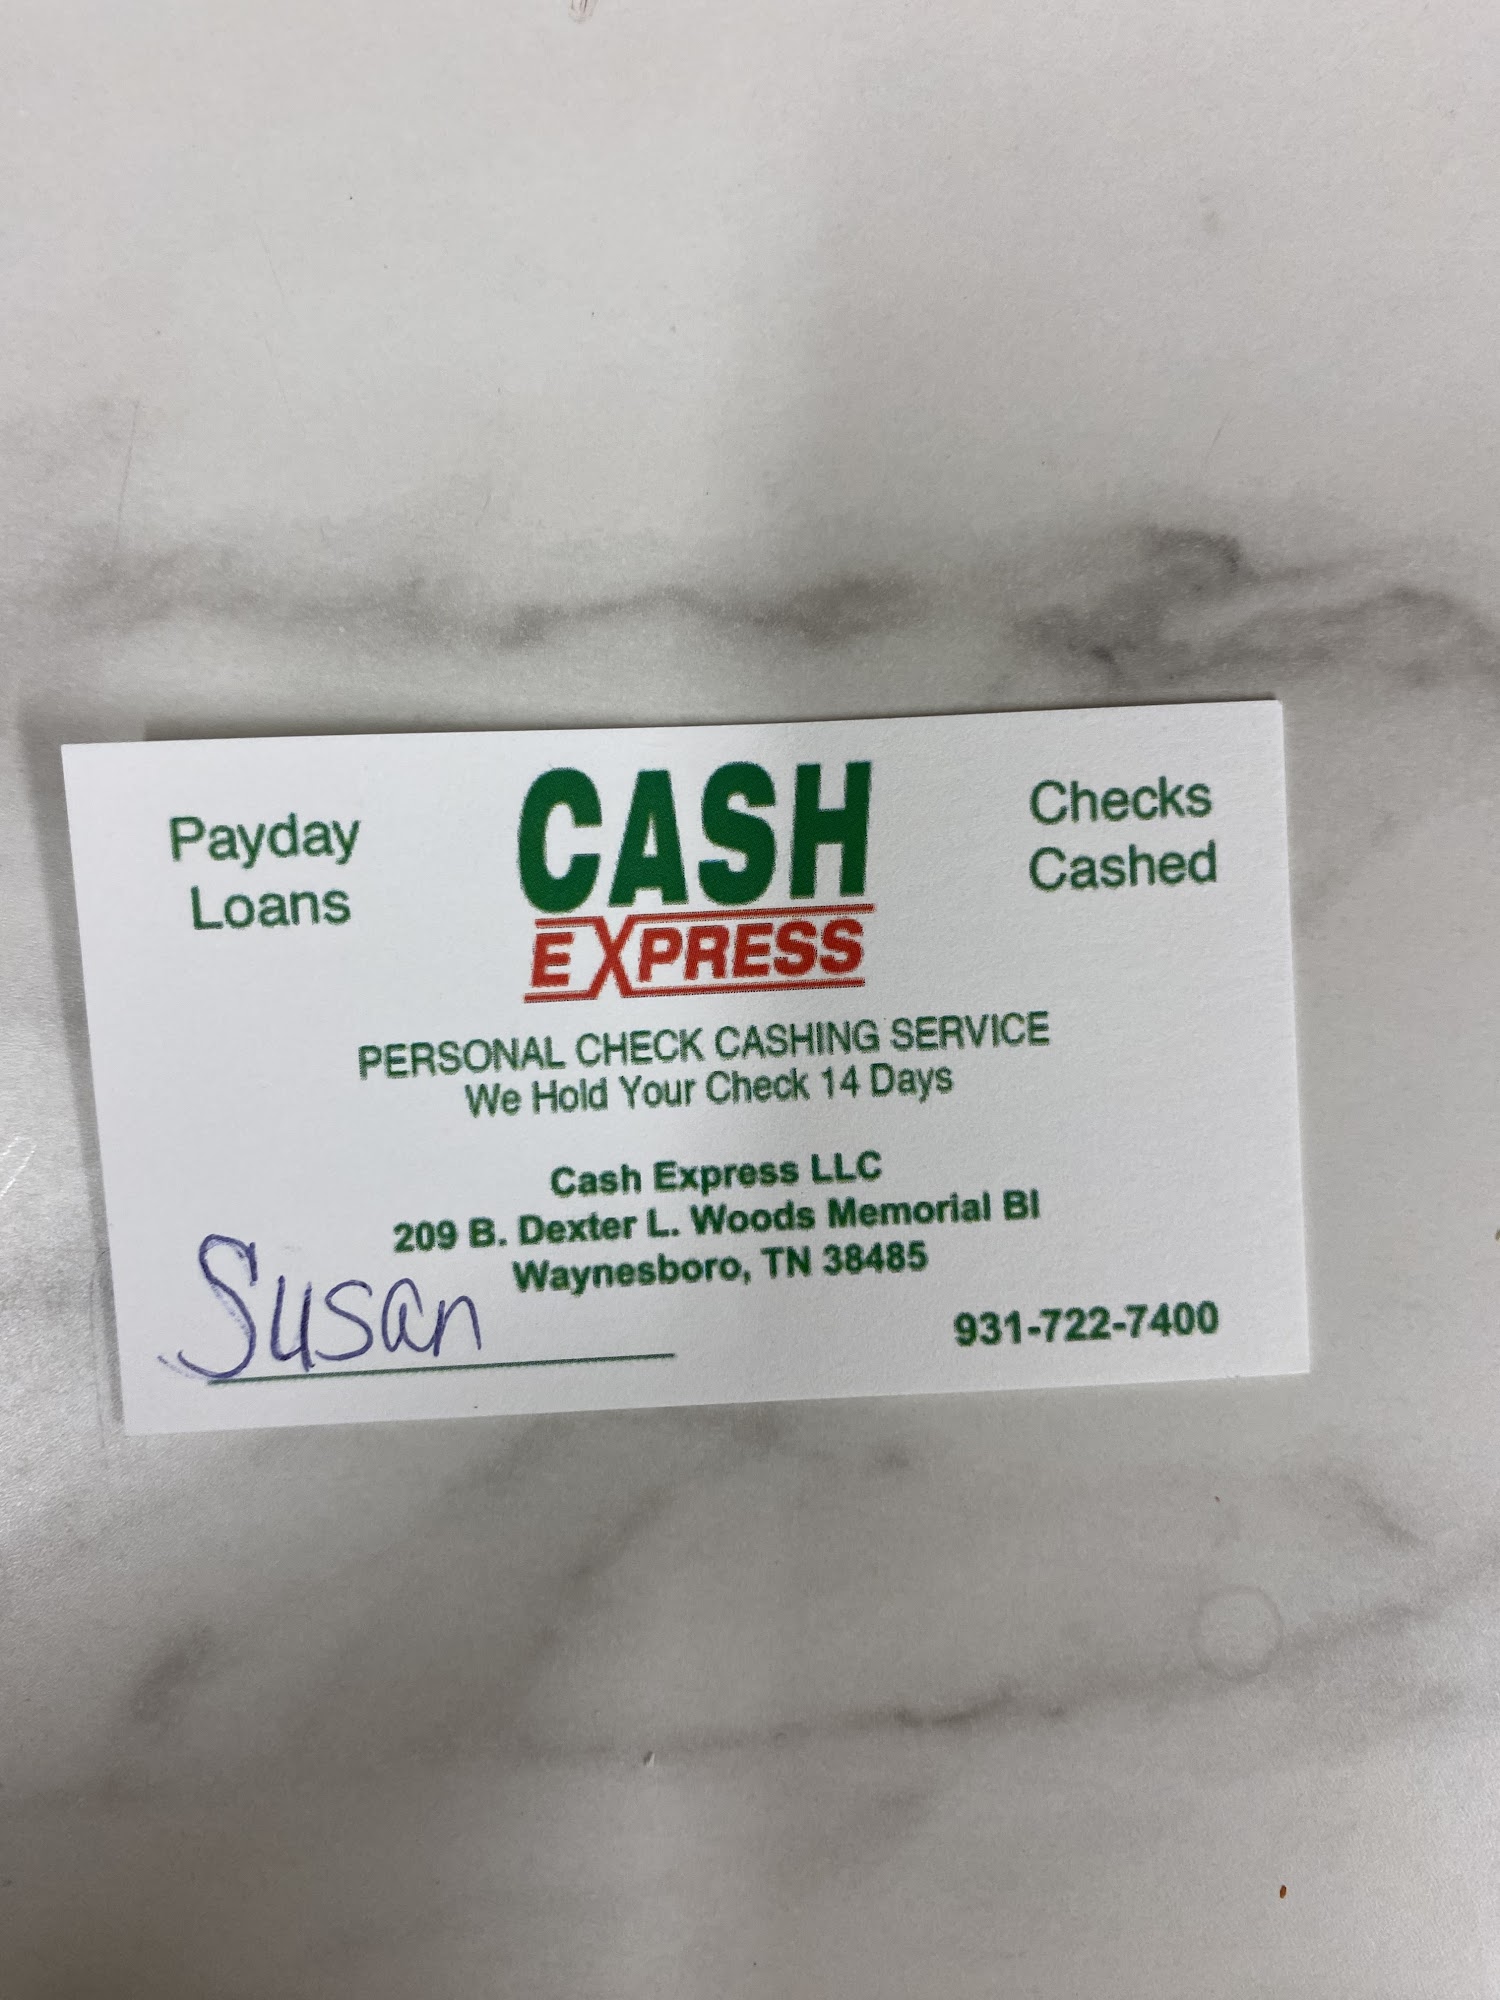 Cash Express 209 Dexter L Woods Memorial Blvd Ste B, Waynesboro Tennessee 38485